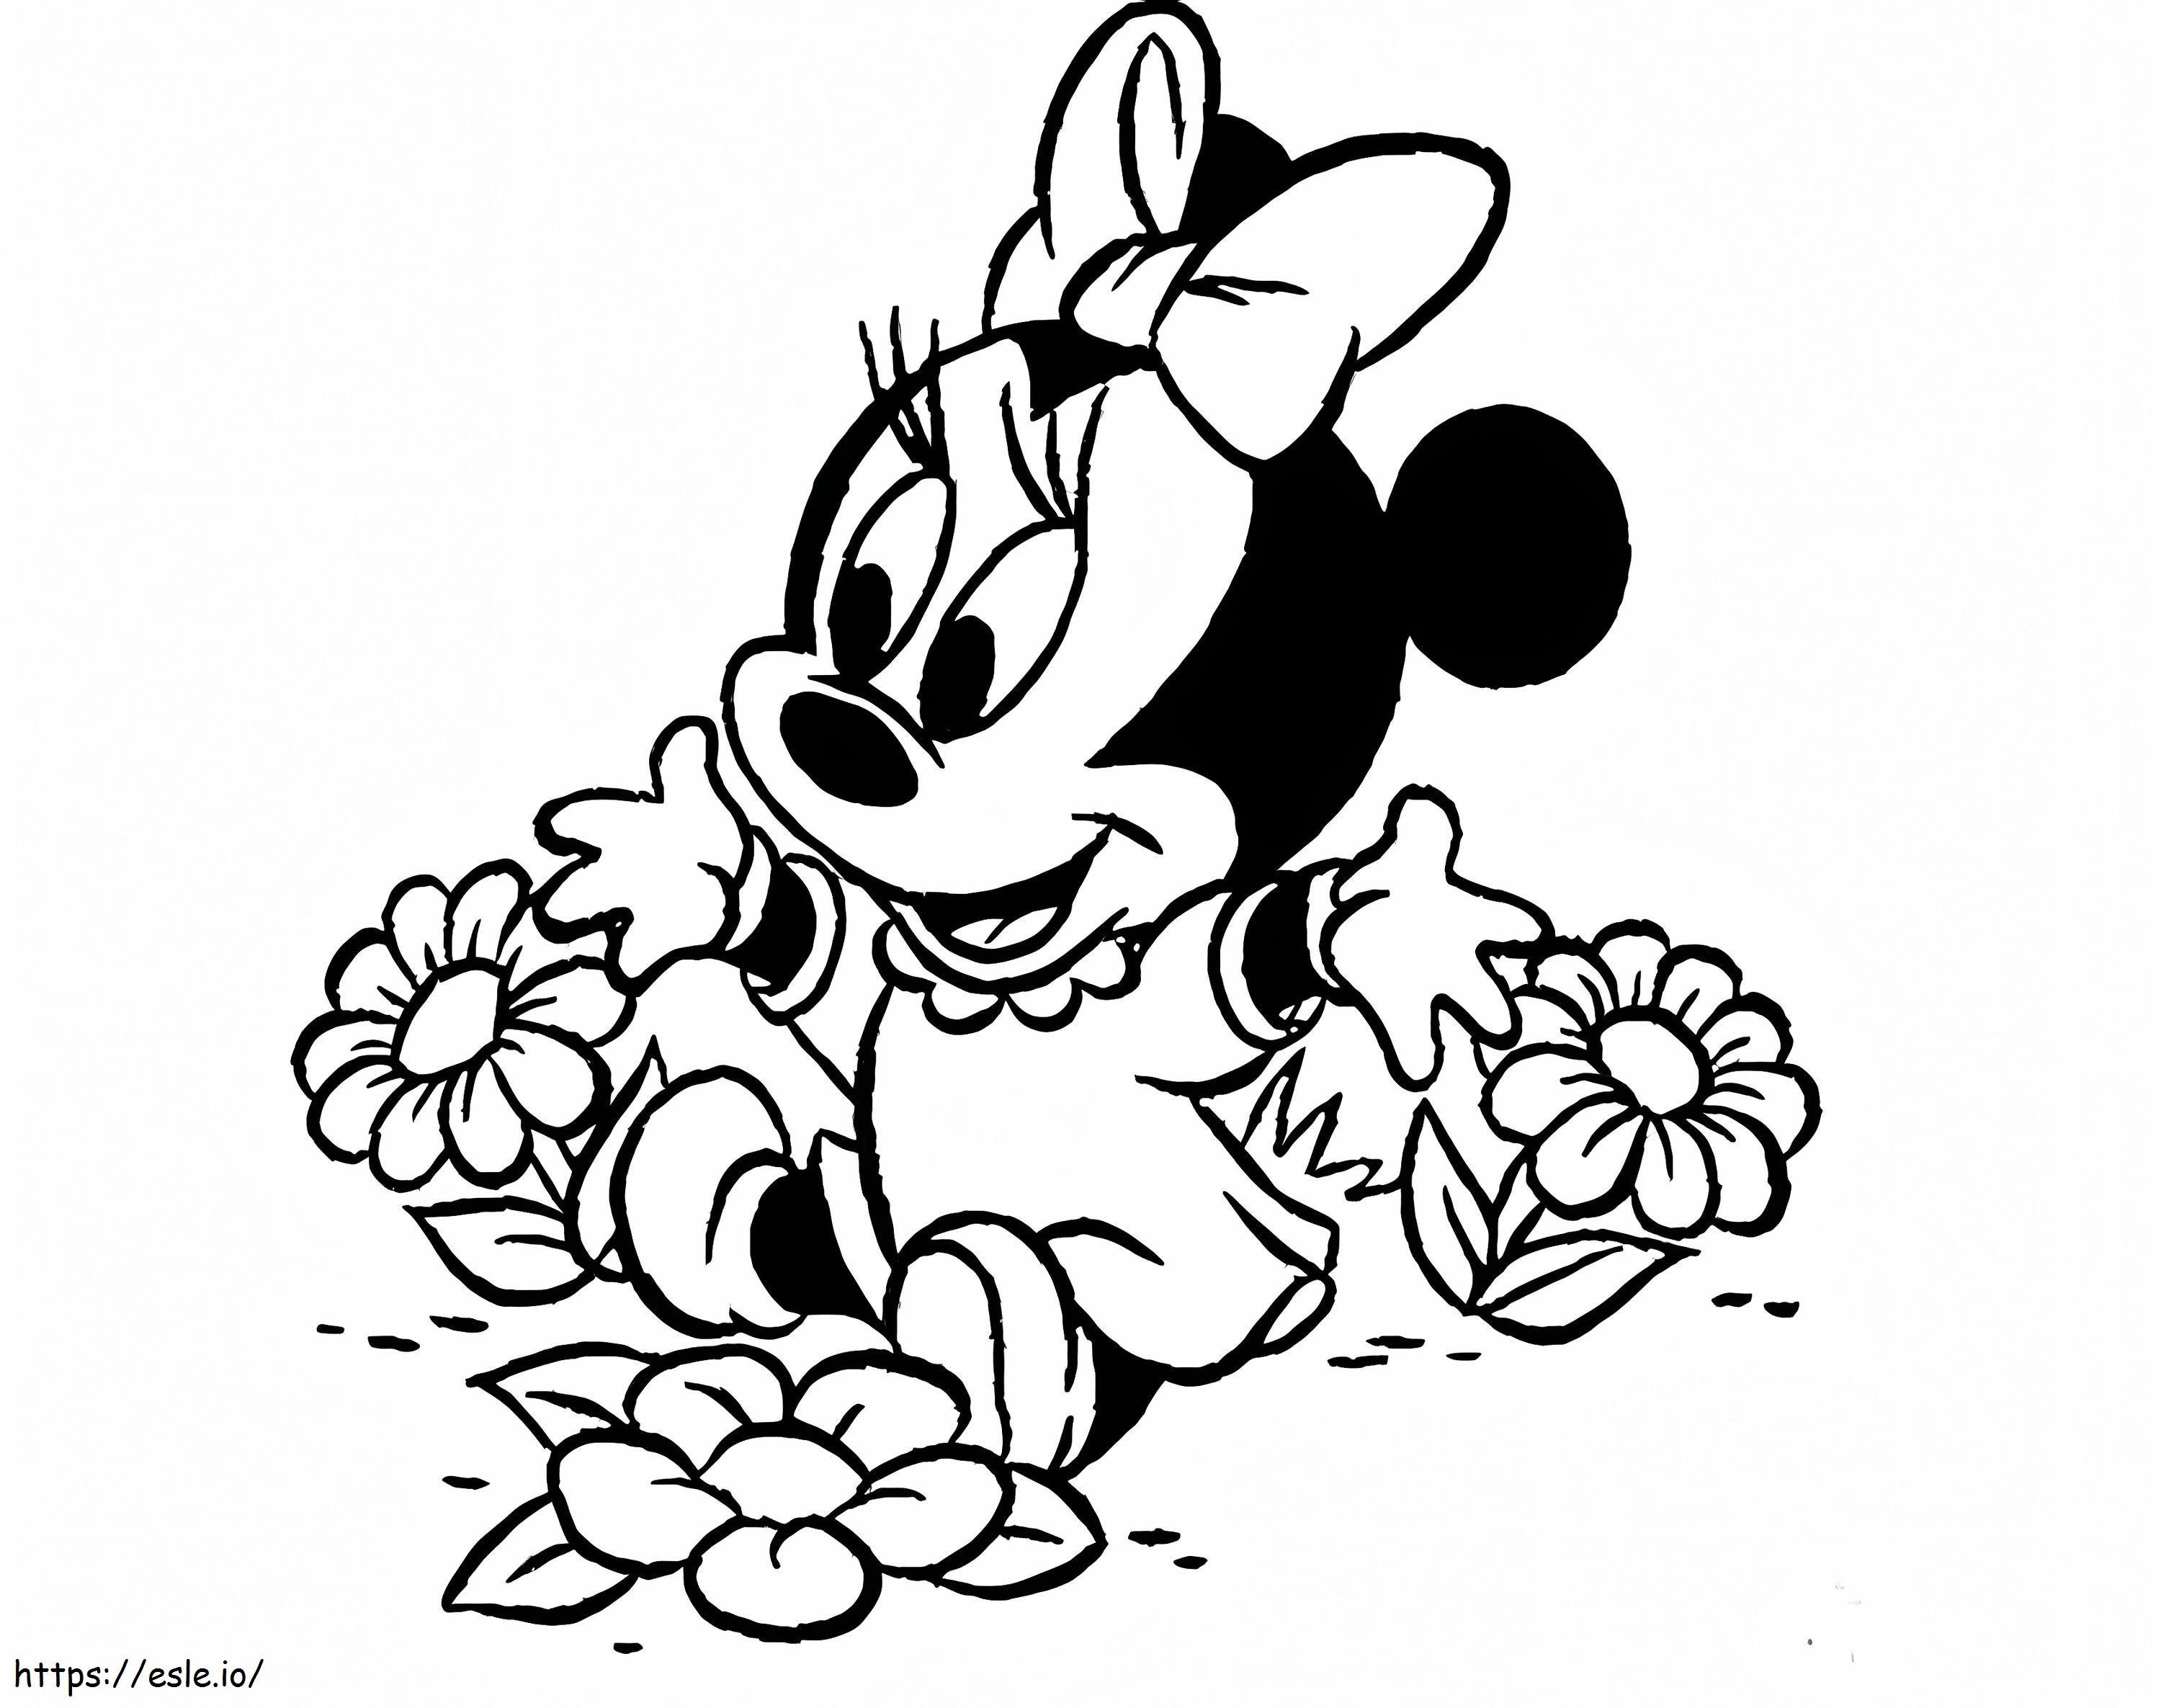 Minnie Mouse Con Flores para colorear